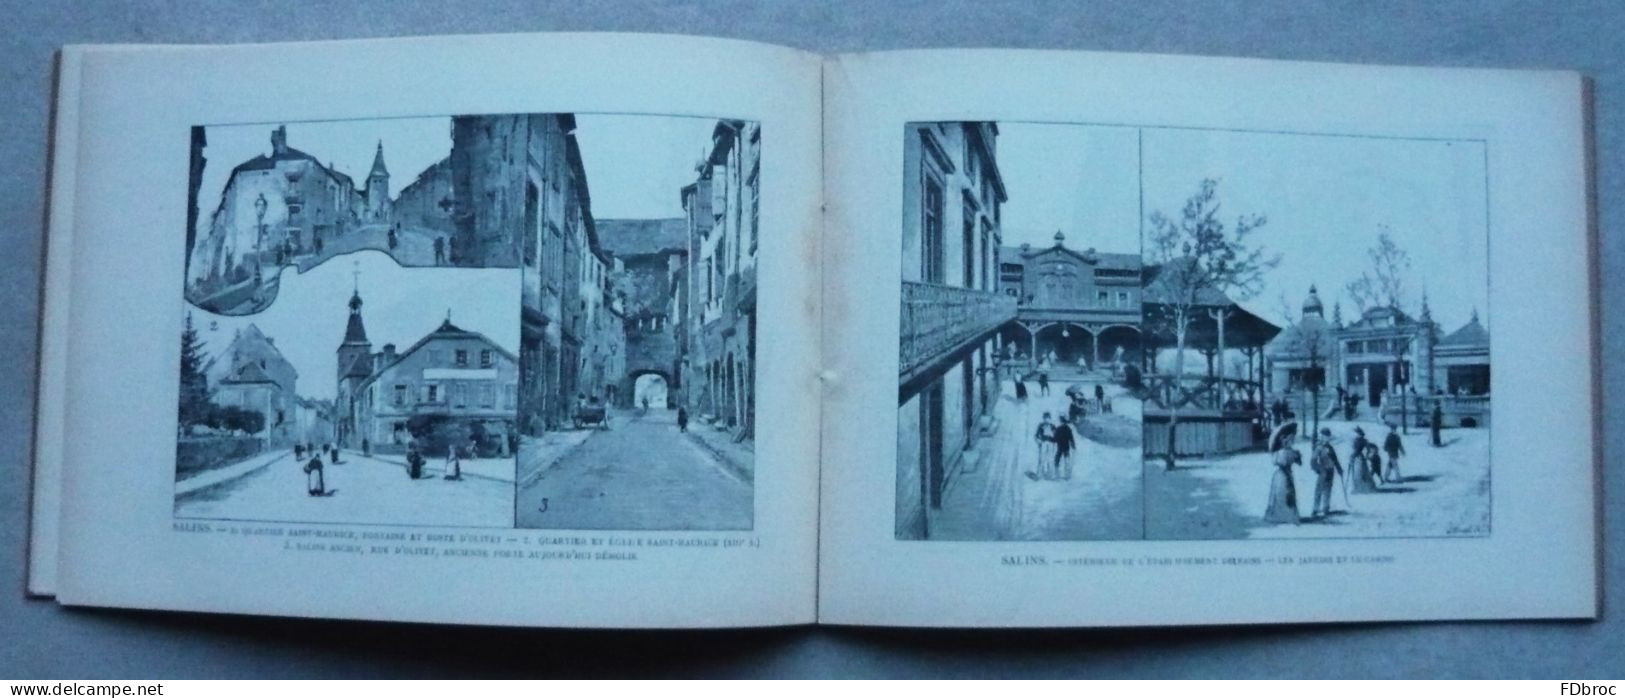 JURA 39 France Album A.KARL N°24 FRANCHE-COMTE Arrondissement de POLIGNY. 1894 ( vues de Arbois Champagnole Salins ....)